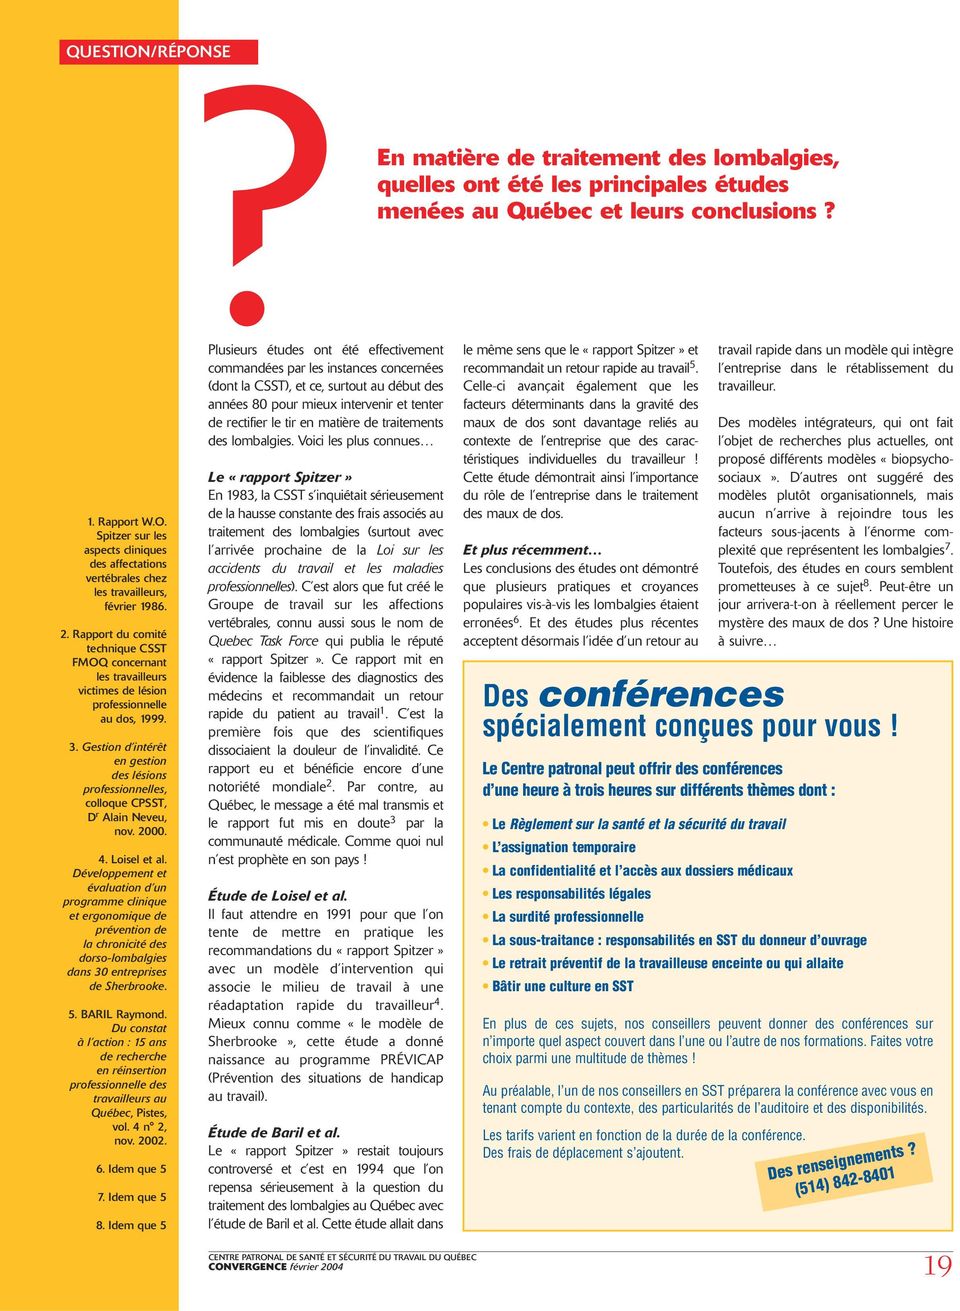 Gestion d intérêt en gestion des lésions professionnelles, colloque CPSST, D r Alain Neveu, nov. 2000. 4. Loisel et al.